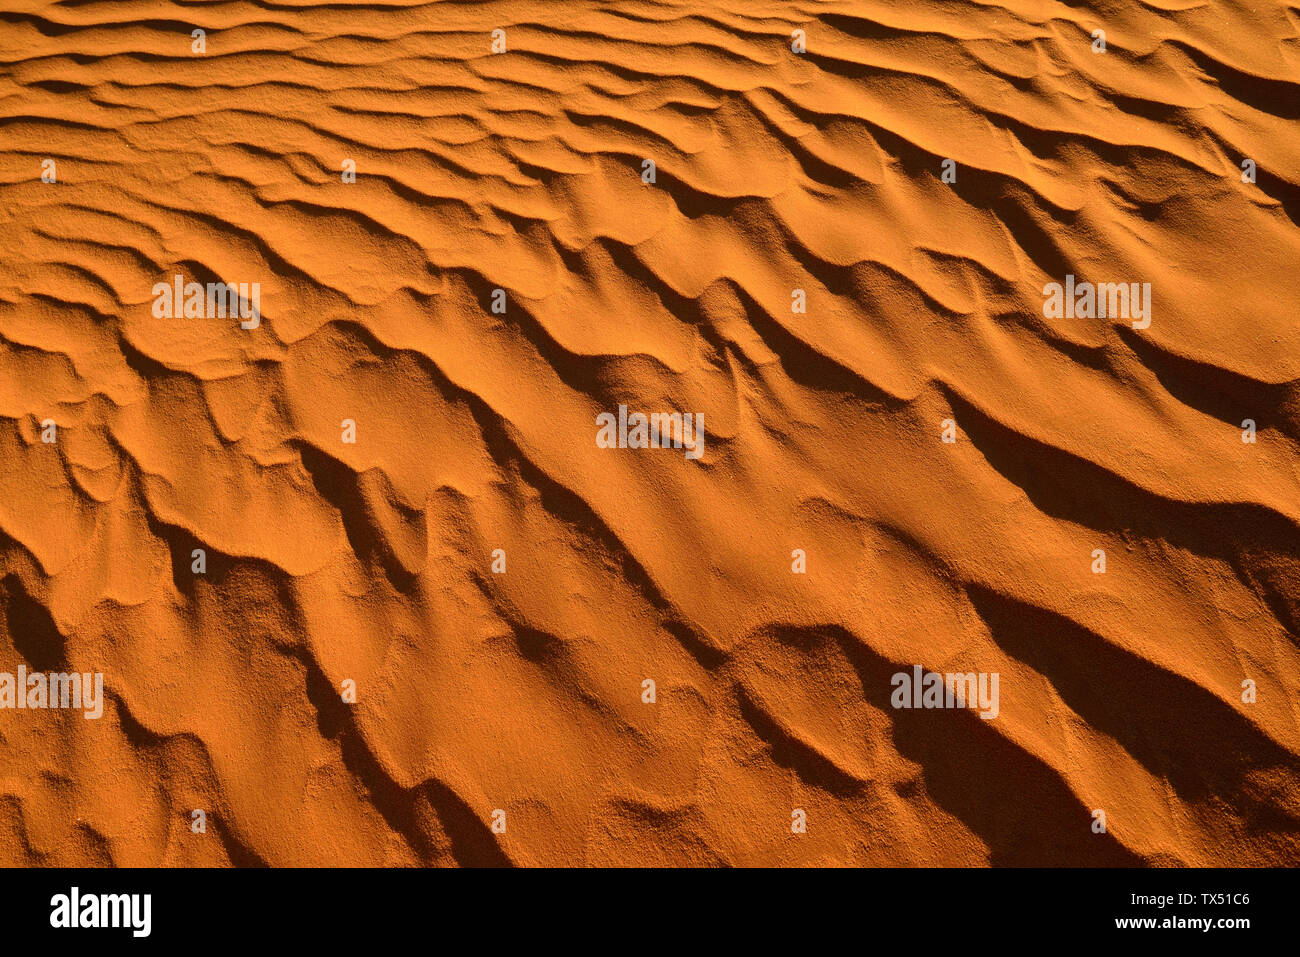 Afrika, Algerien, Sahara, rippelmarken, Textur auf einem sanddune Stockfoto